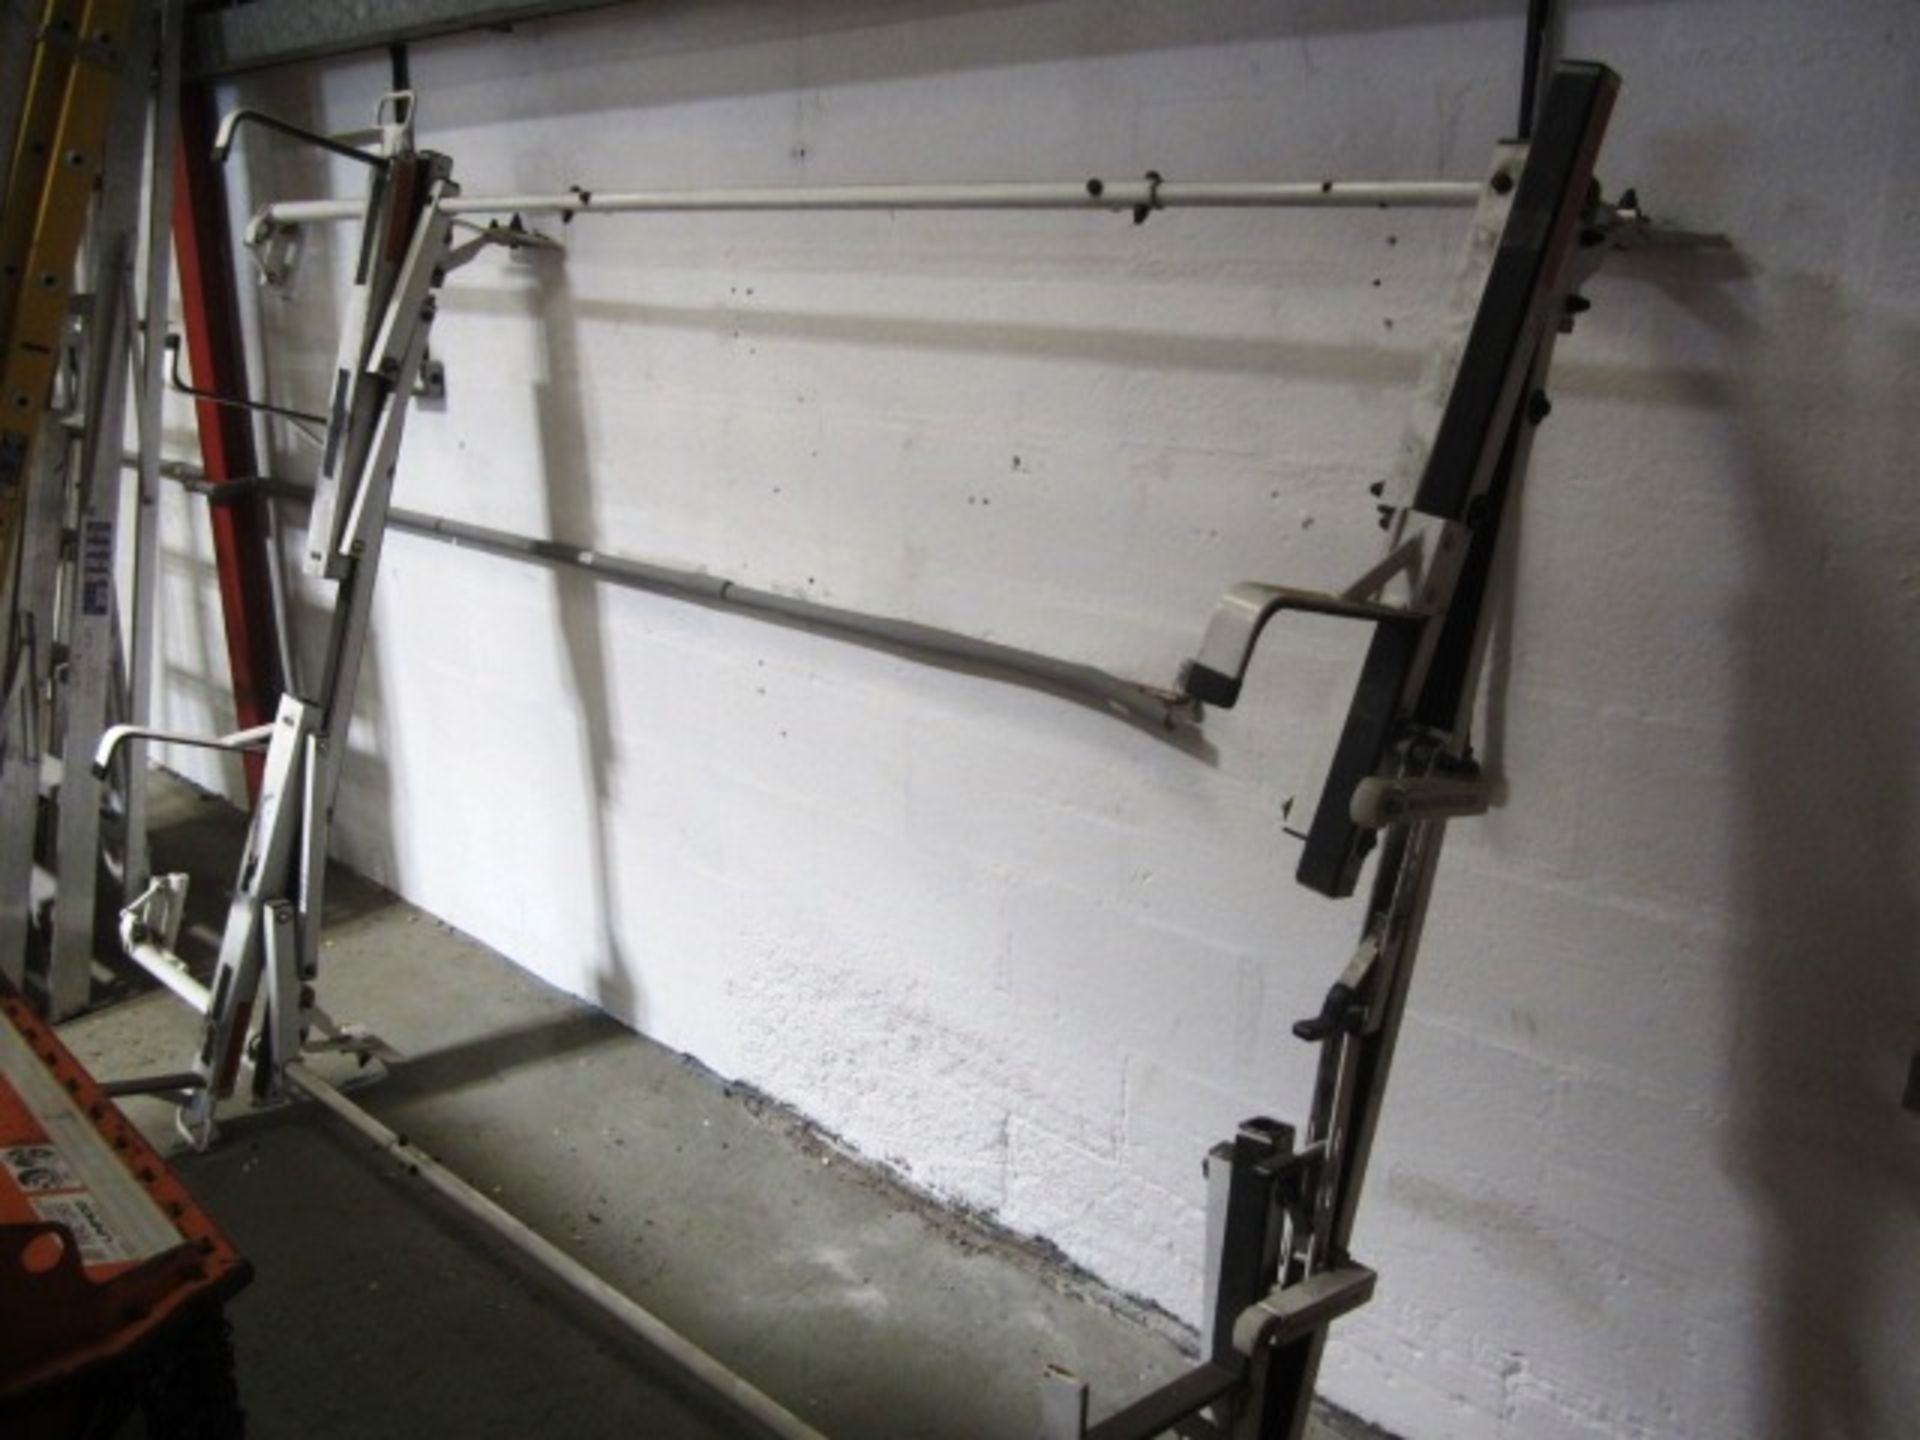 Ergo Rack ladder roof rack